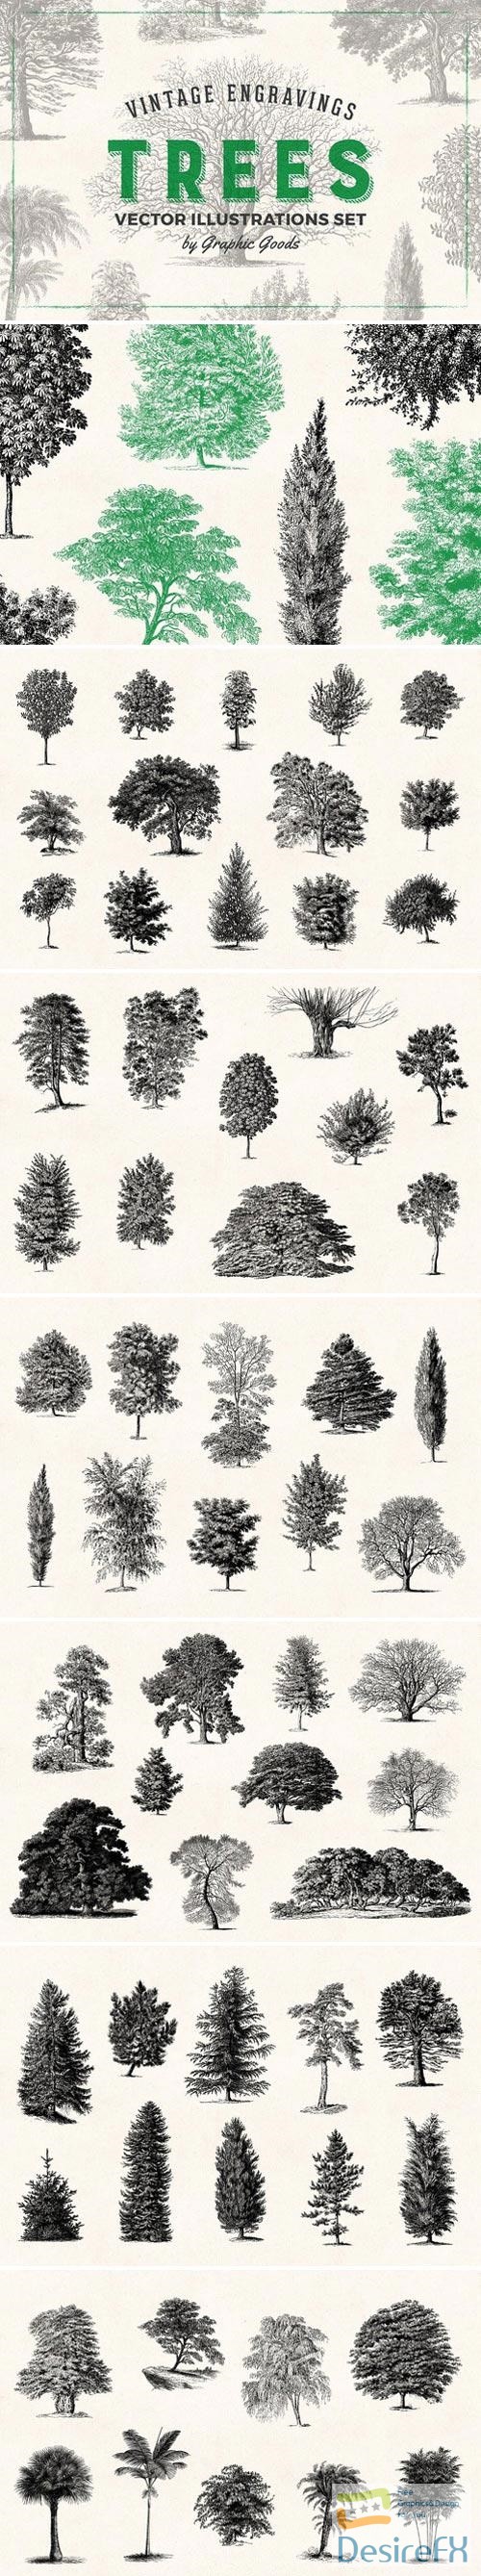 Trees - Vintage Illustrations Set 1566833